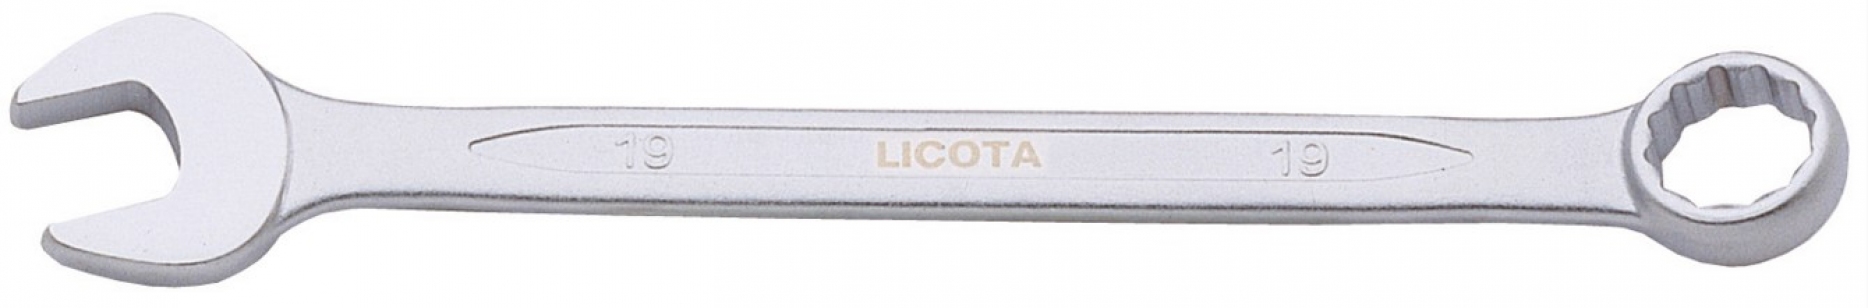 Ключ комбинированный Licota 29 мм (AWT-ERS29)